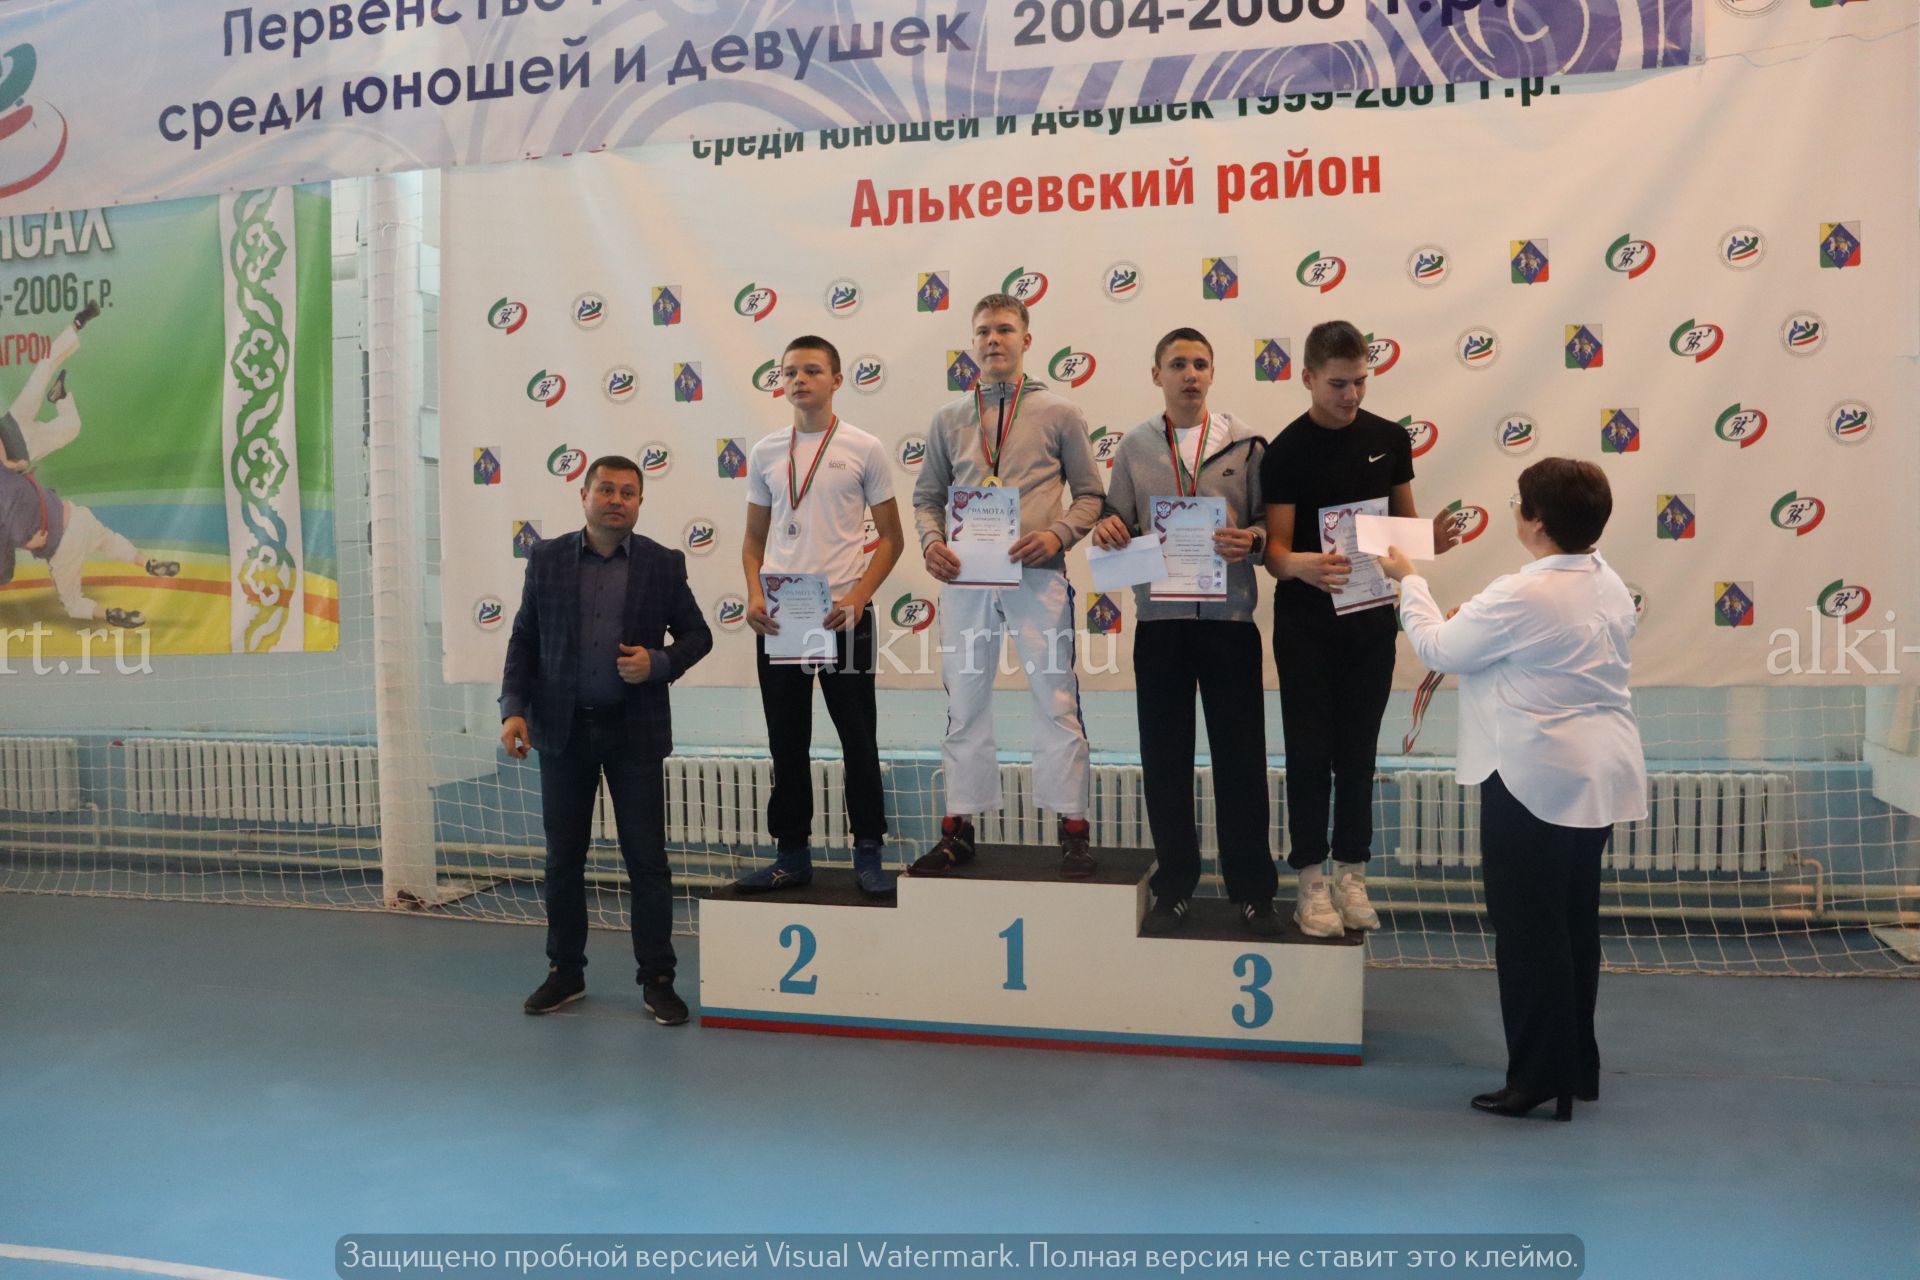 Александр Никошин призларына көрәш буенча районара фестиваль